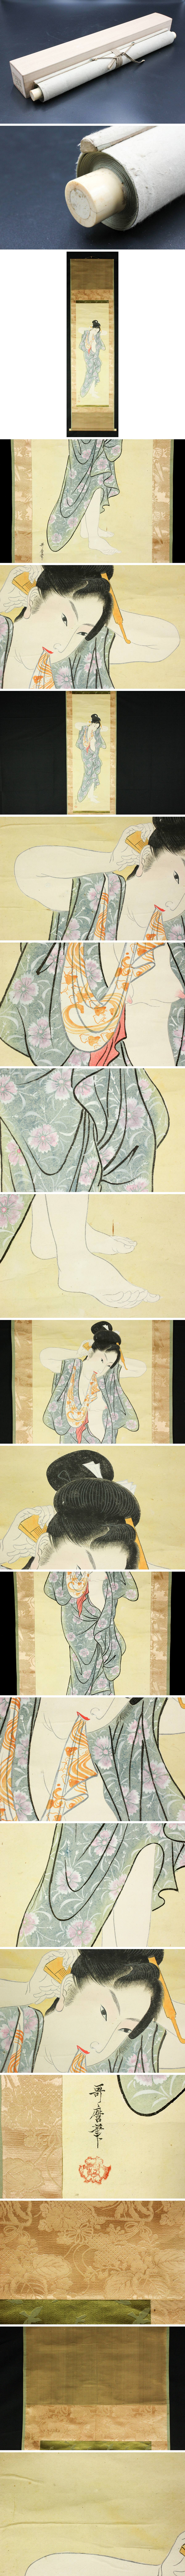 【在庫あ特価】喜多川歌麿「美人図」肉筆絹本 掛軸 名家蔵出品 4T38.15C 人物、菩薩